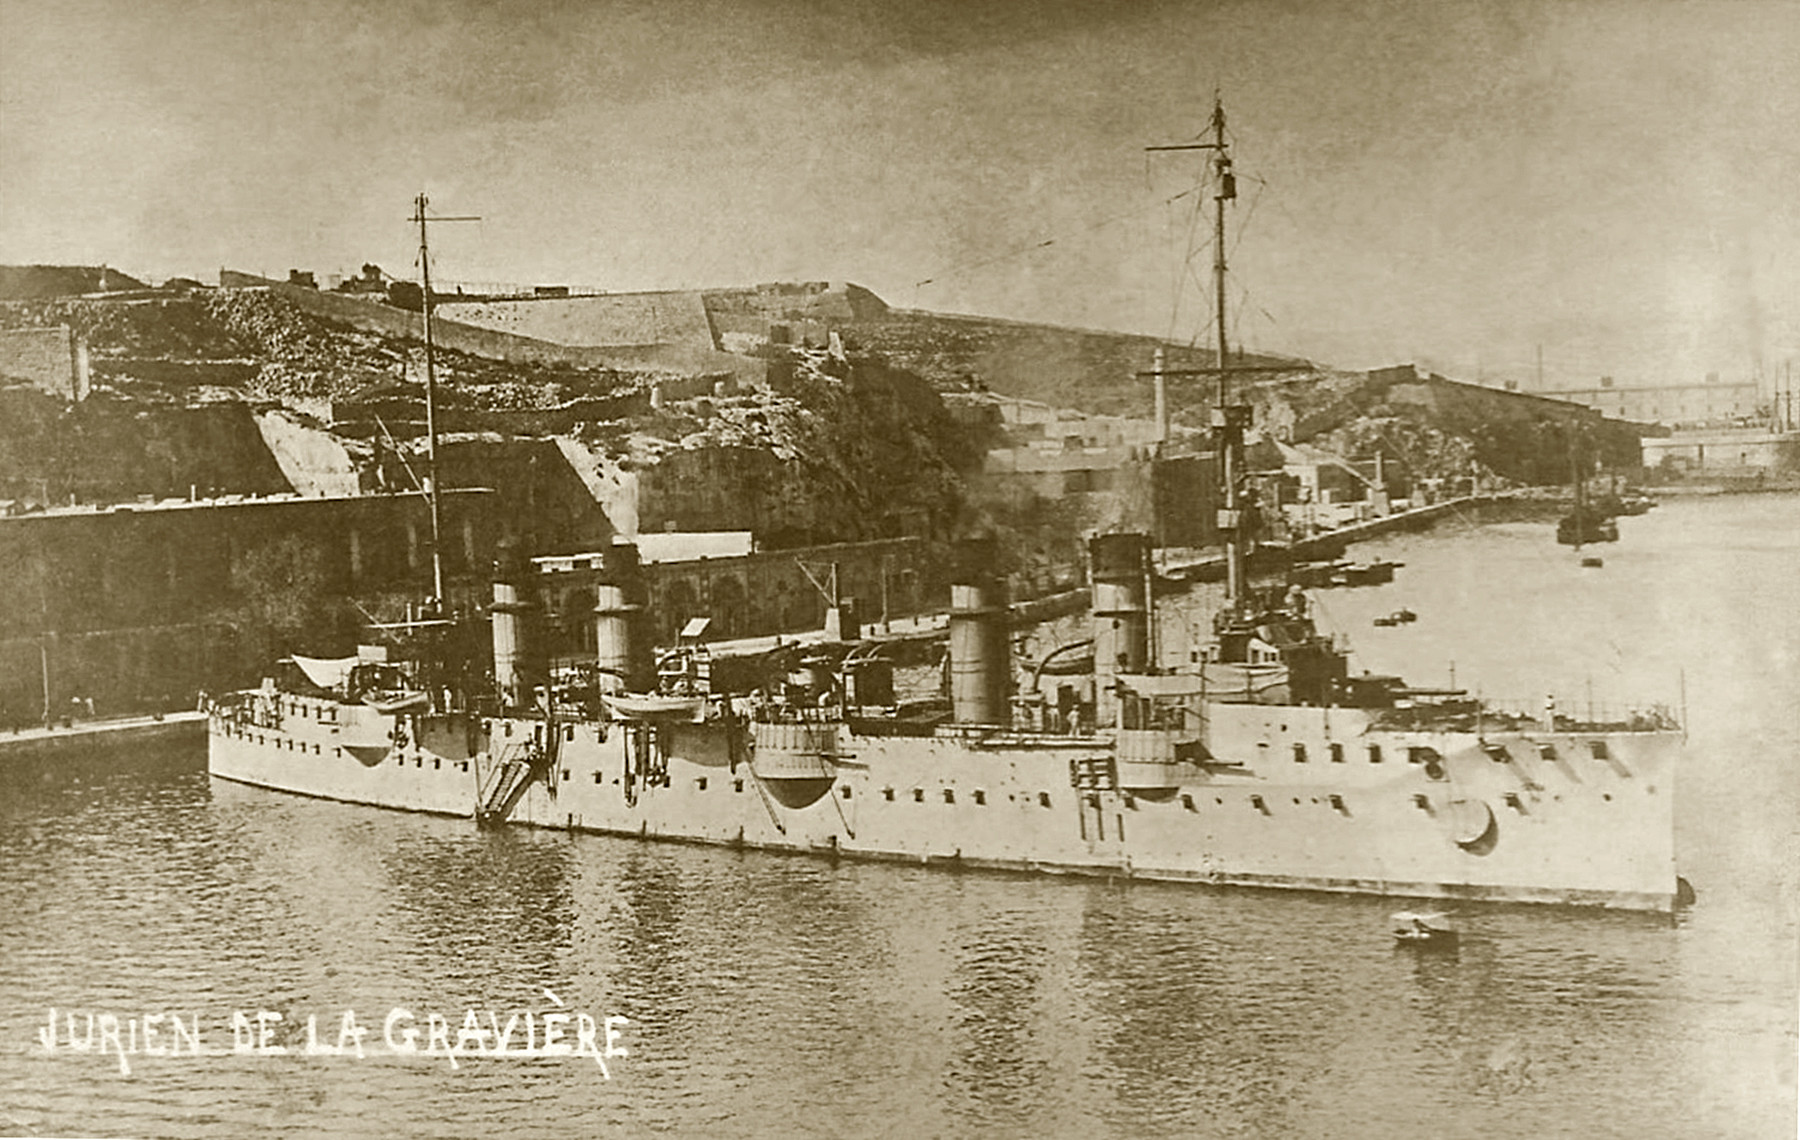 Jurien de la Greviere (1916 - Malta).jpg